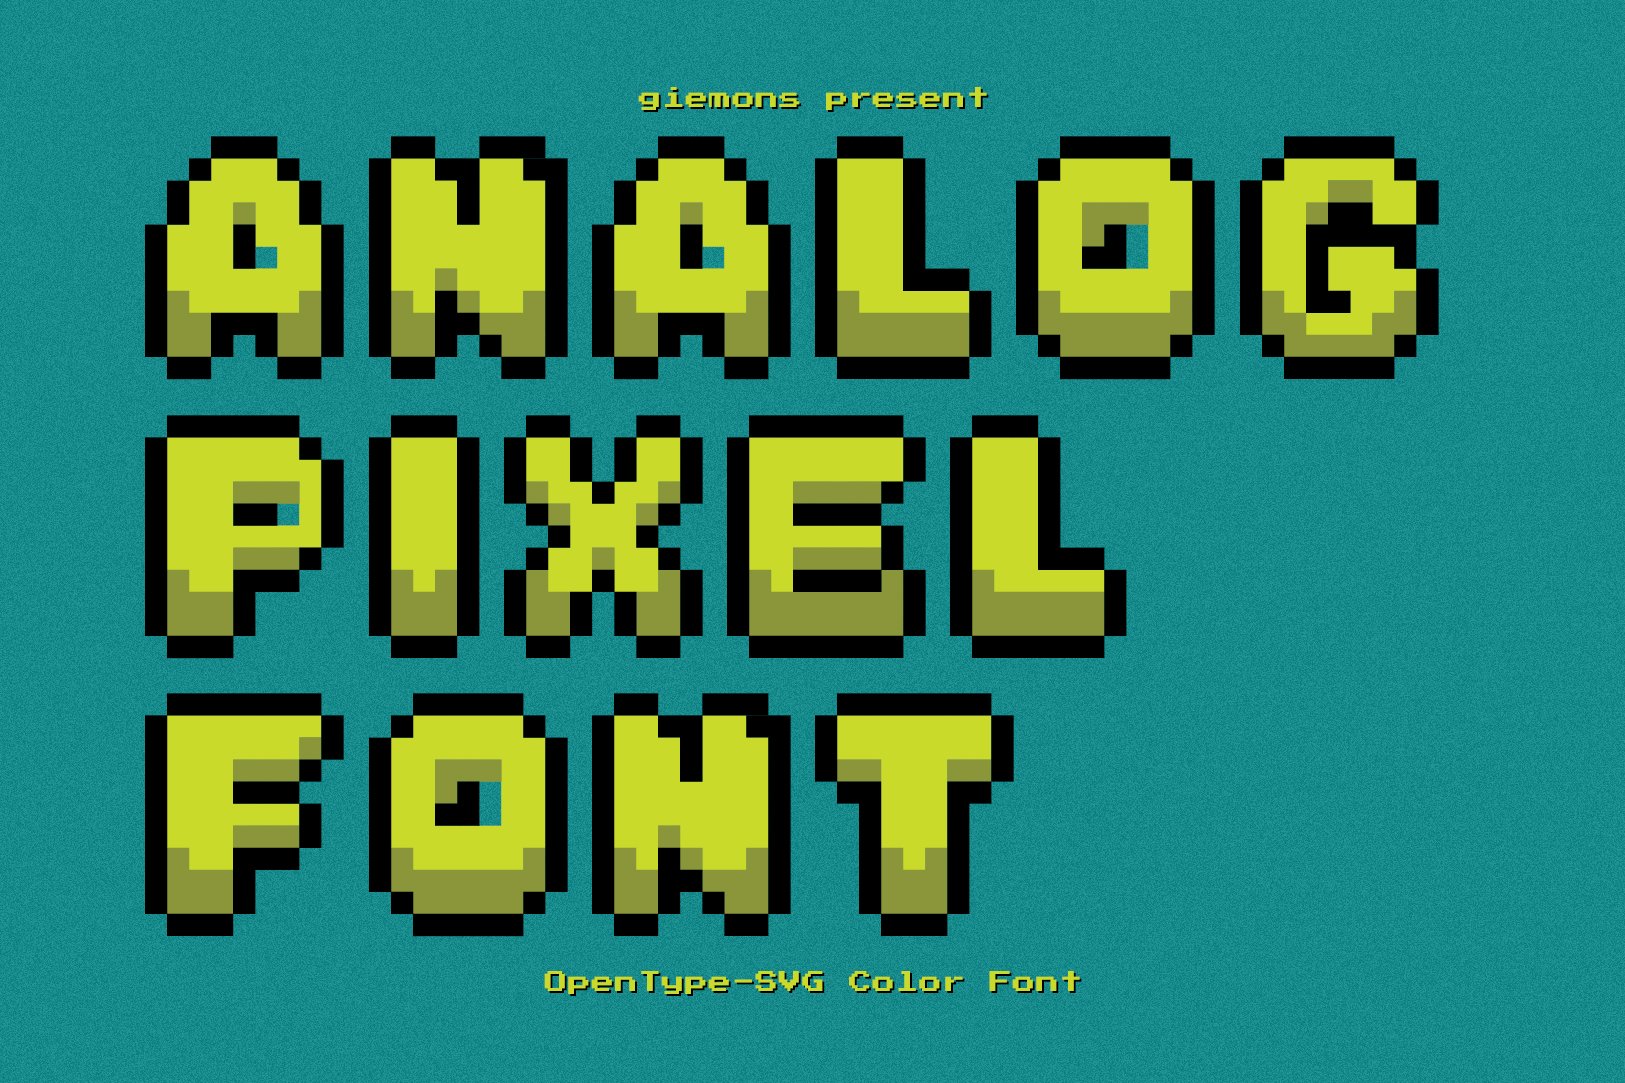 Analog Pixel - SVG Font cover image.